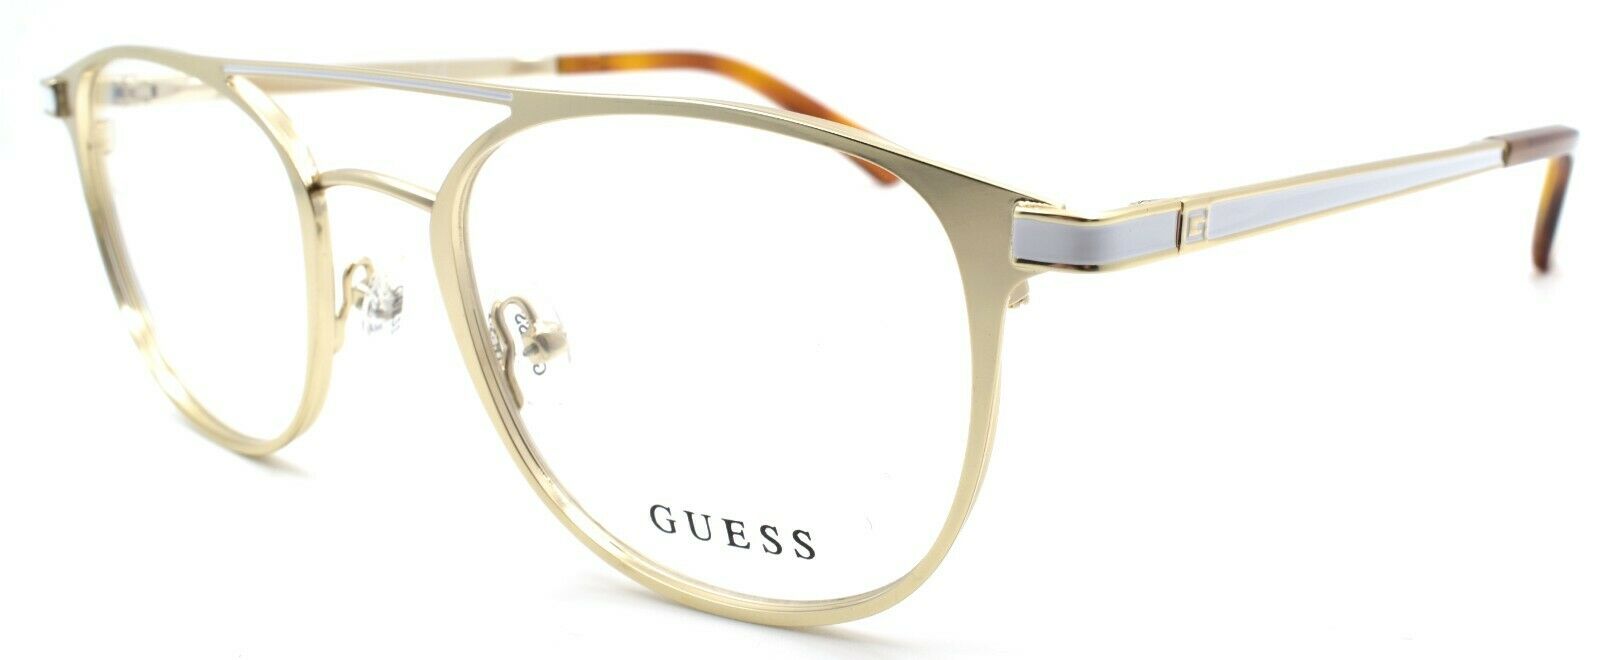 1-GUESS GU1988 032 Men's Eyeglasses Frames Aviator 50-21-145 Pale Gold-889214112729-IKSpecs